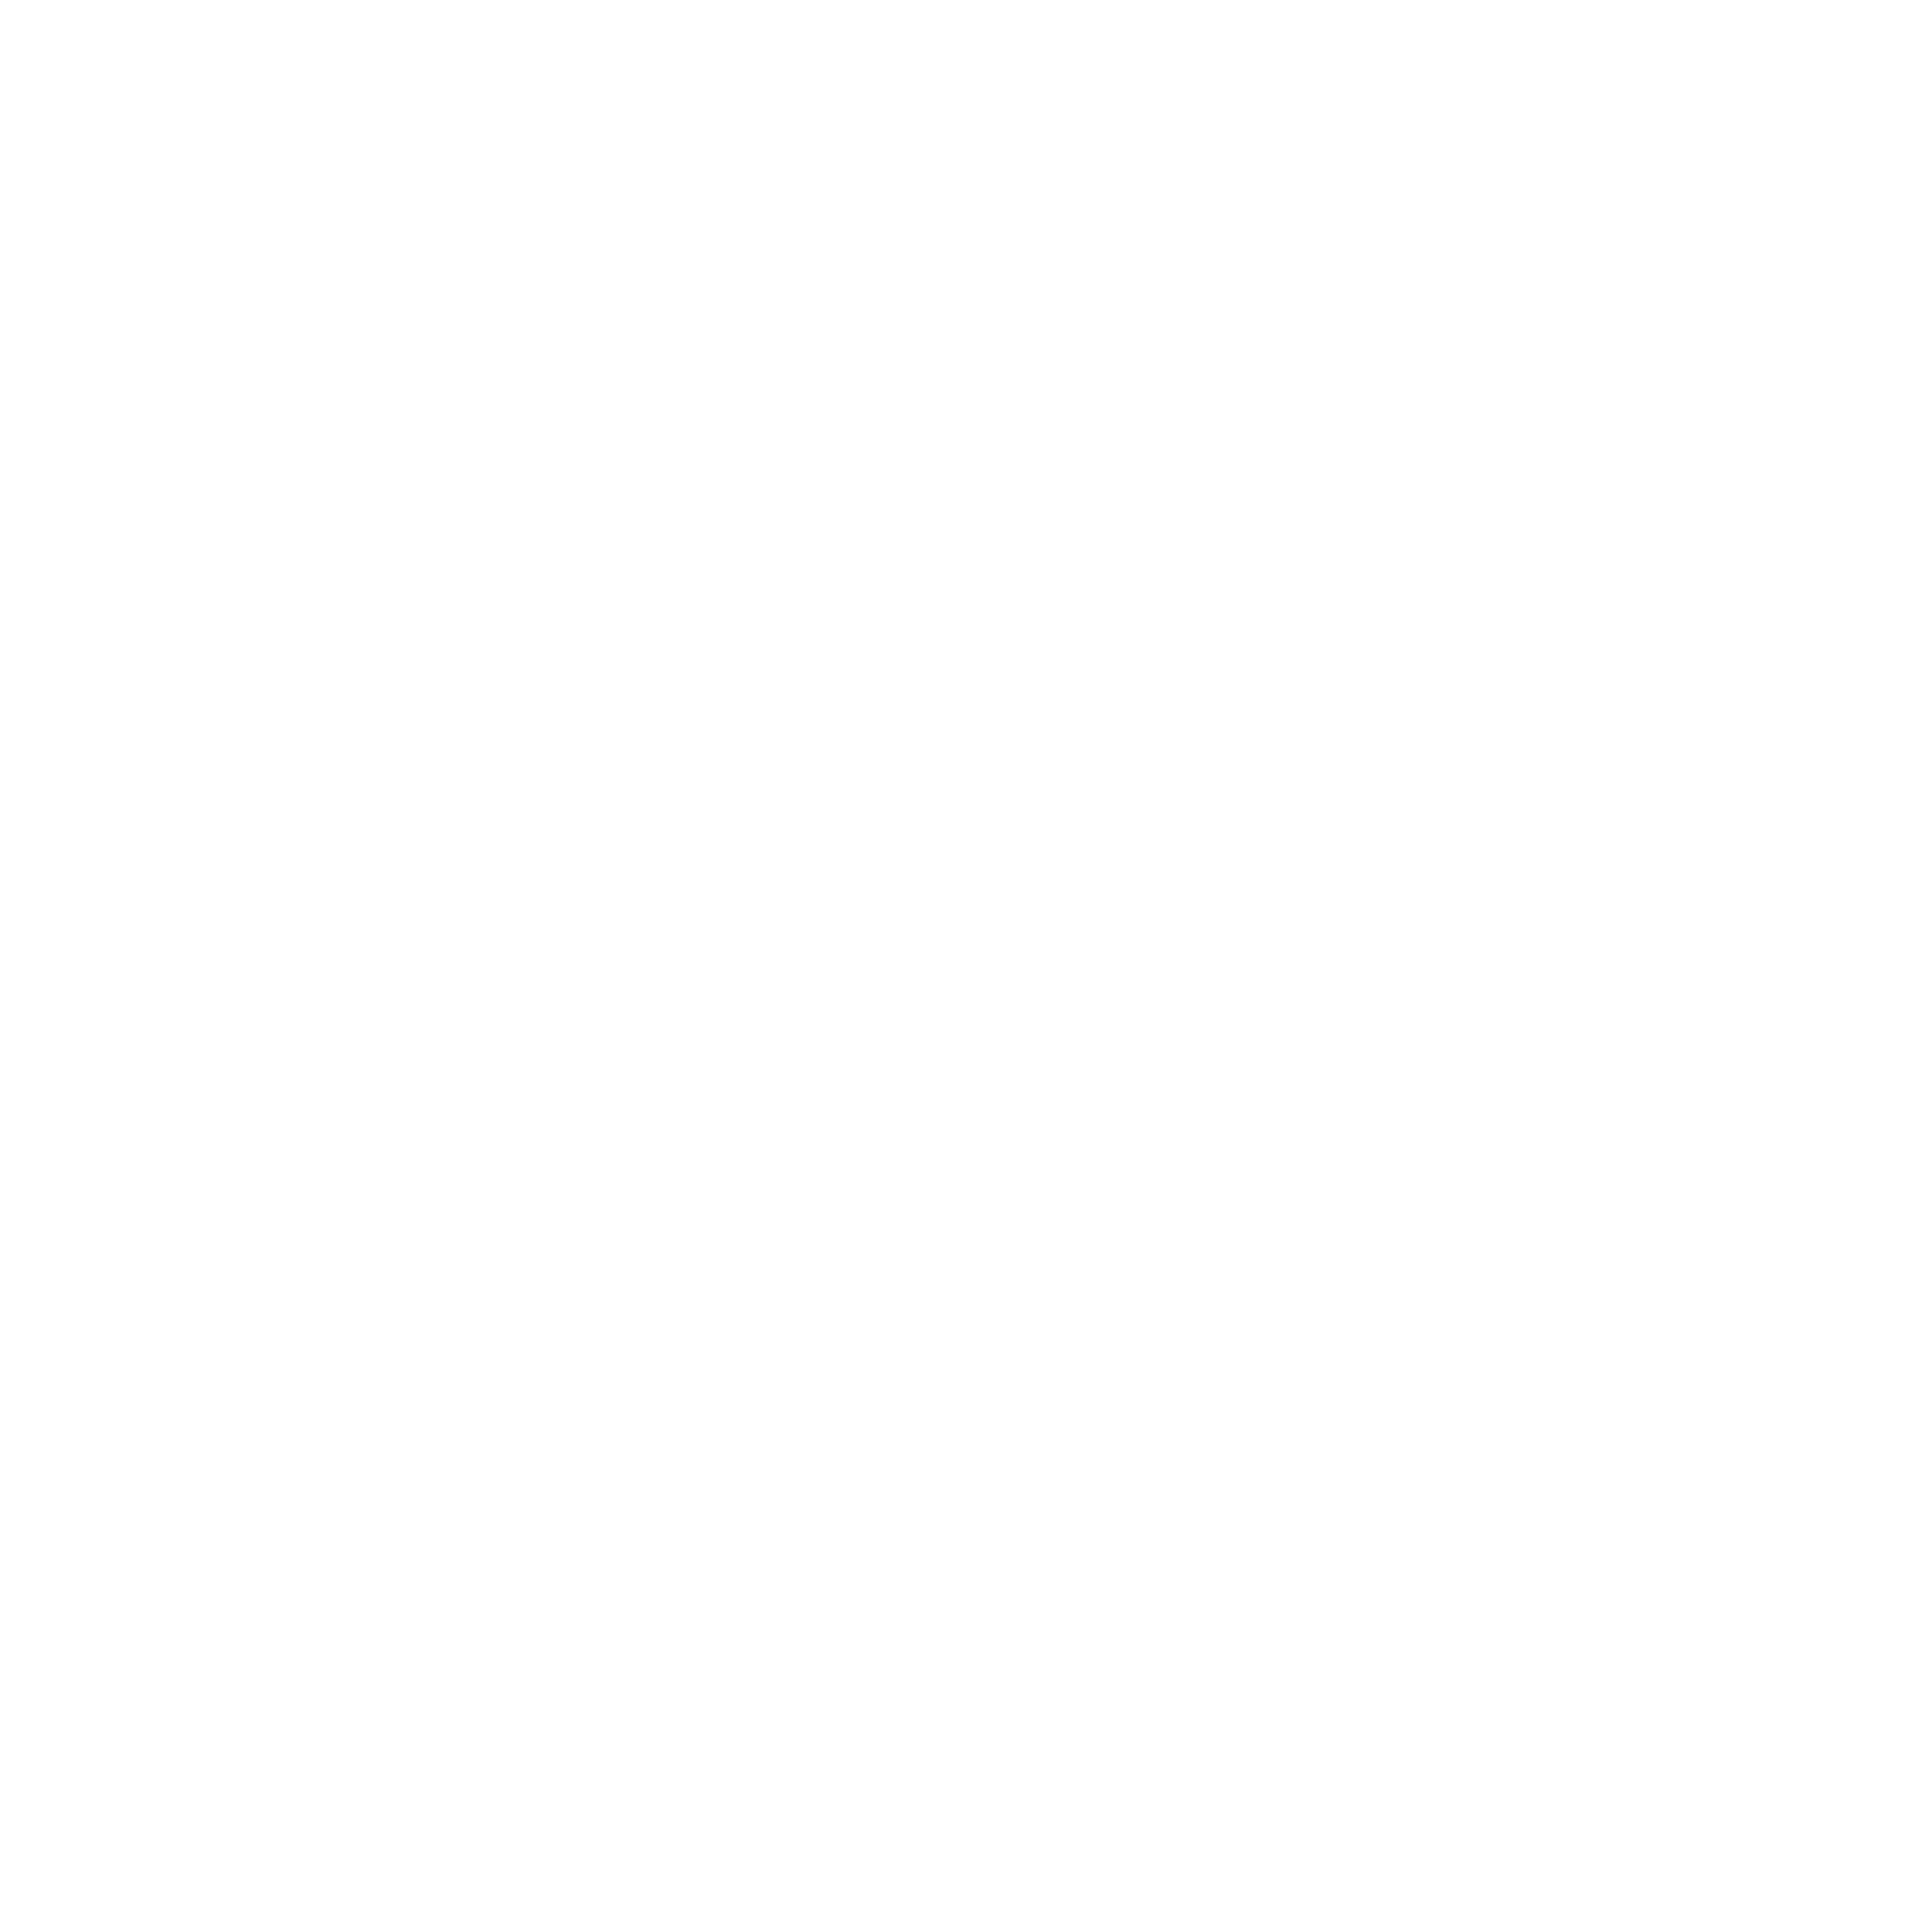 Energy Legal